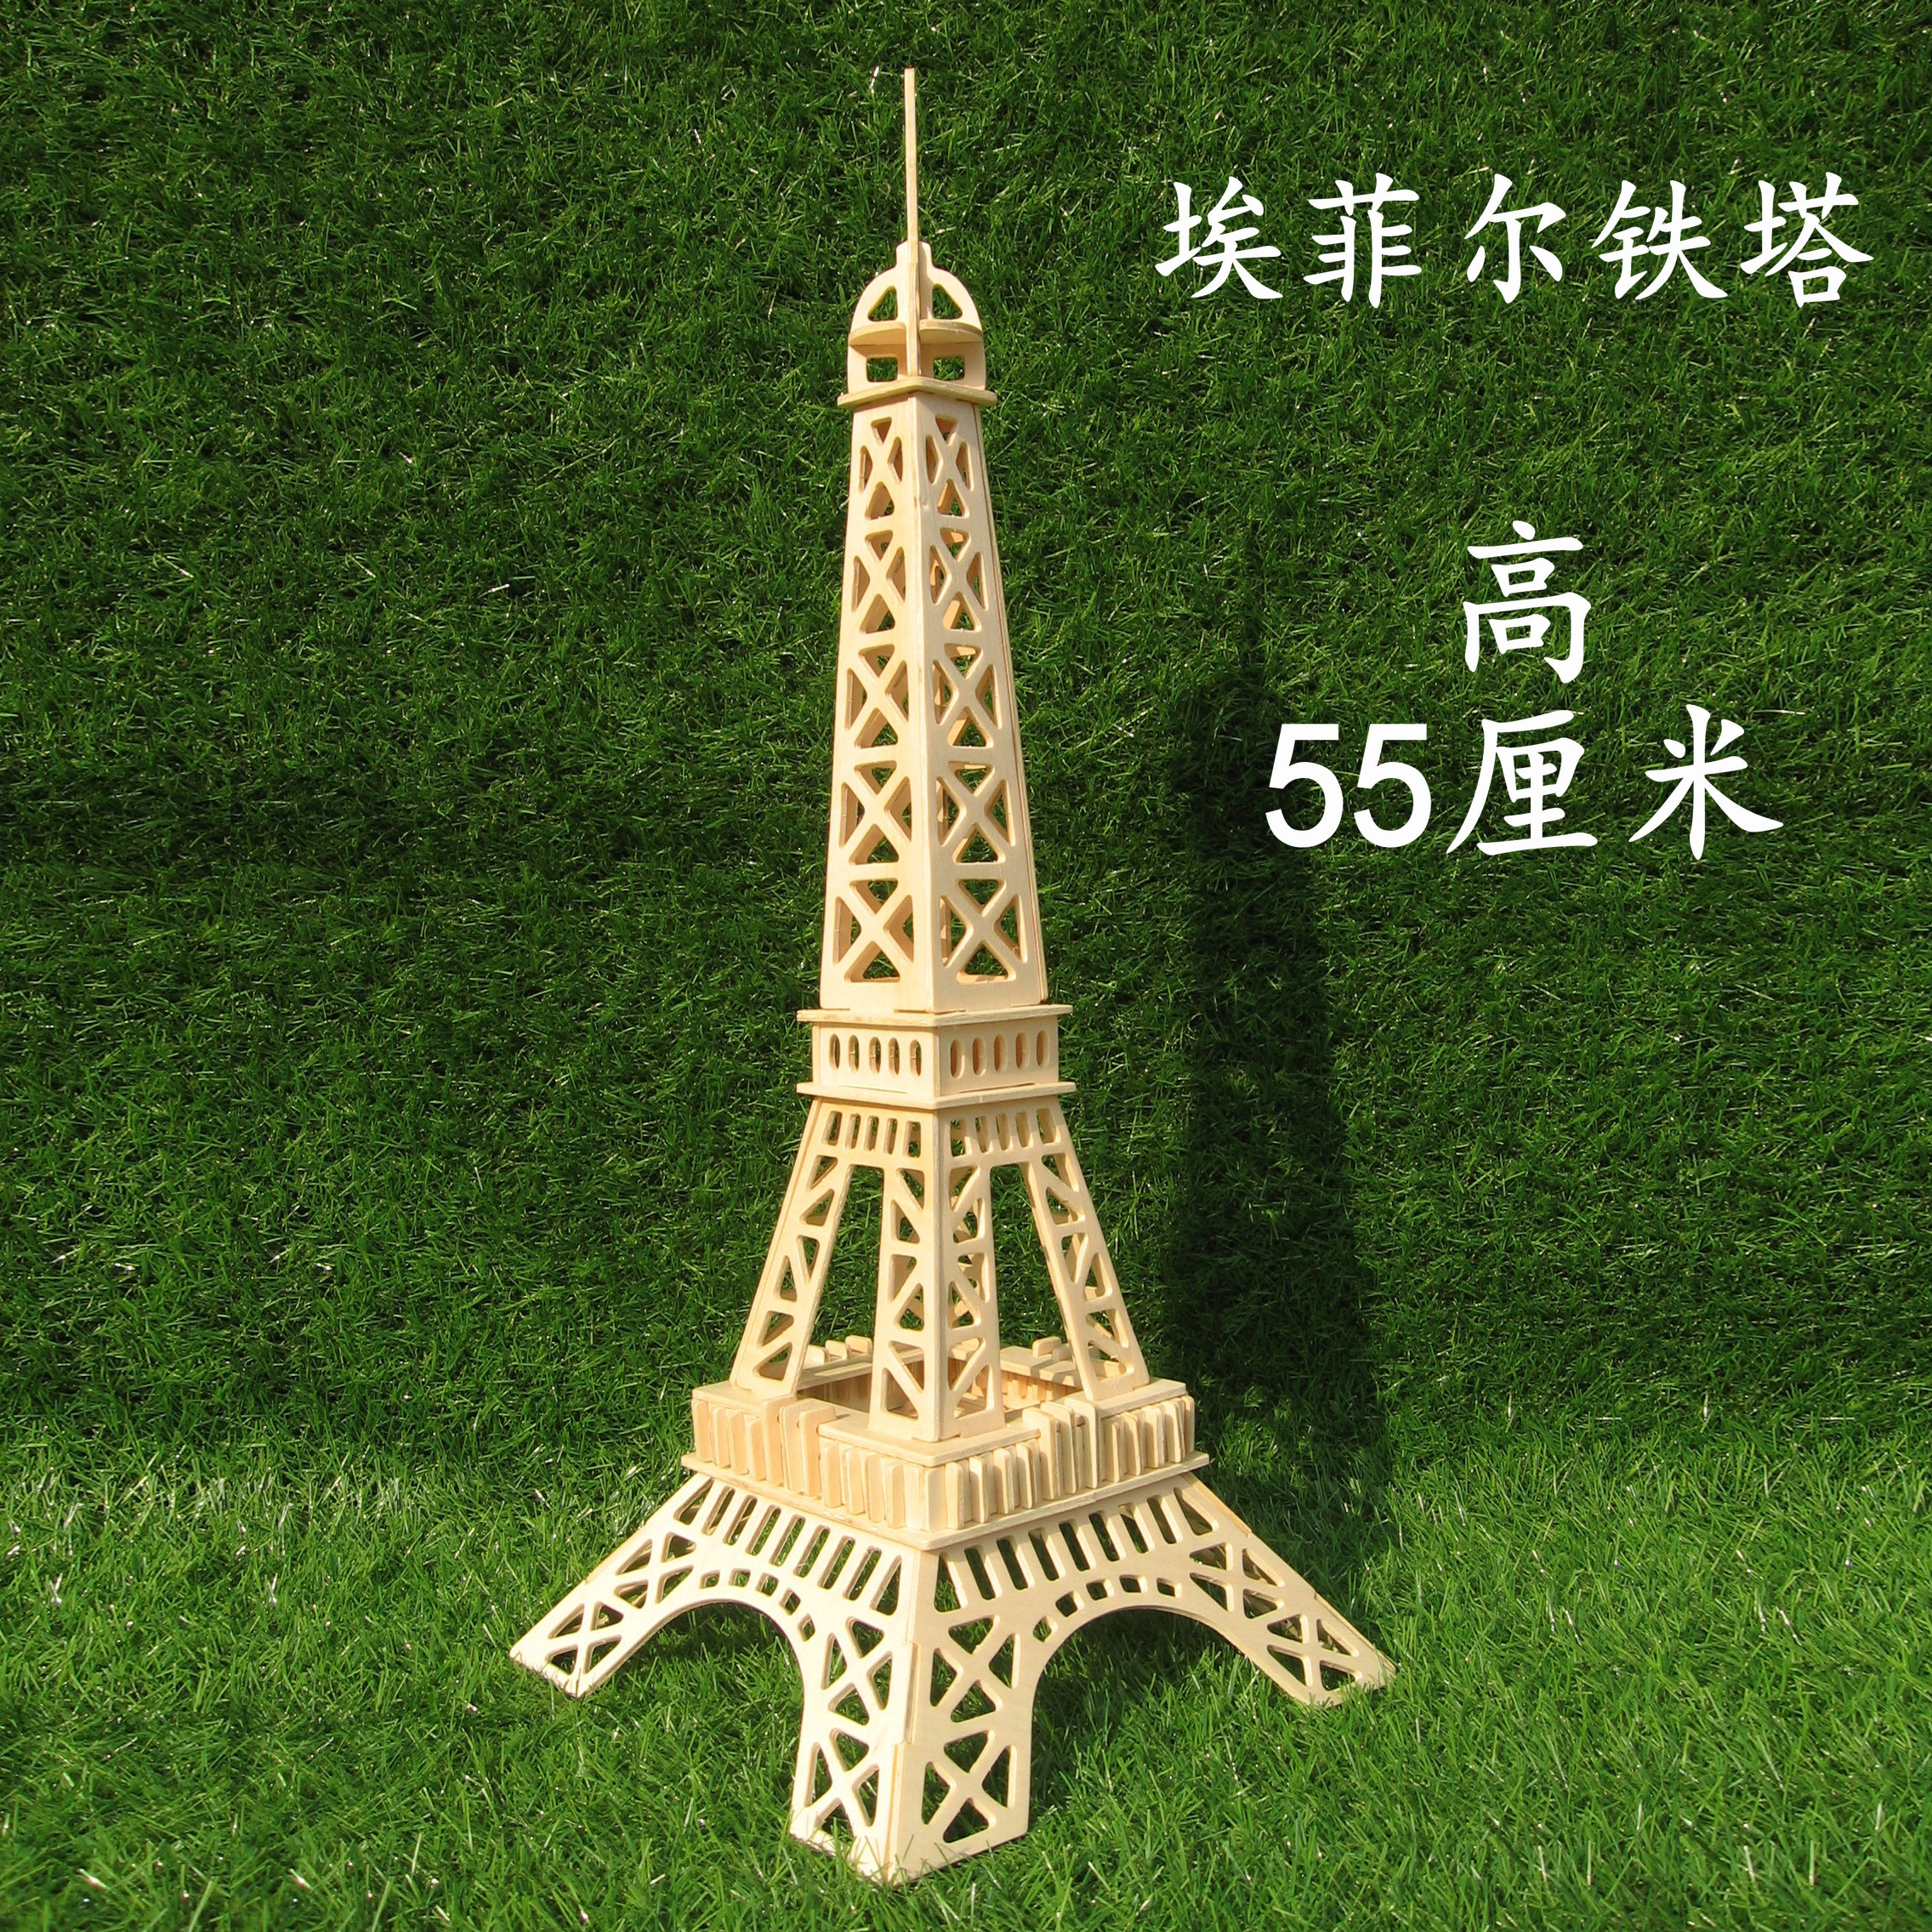 DIY 木製組立モデル 3D 立体パズル手作りおもちゃ木製パリエッフェル塔世界有名な建築モデル